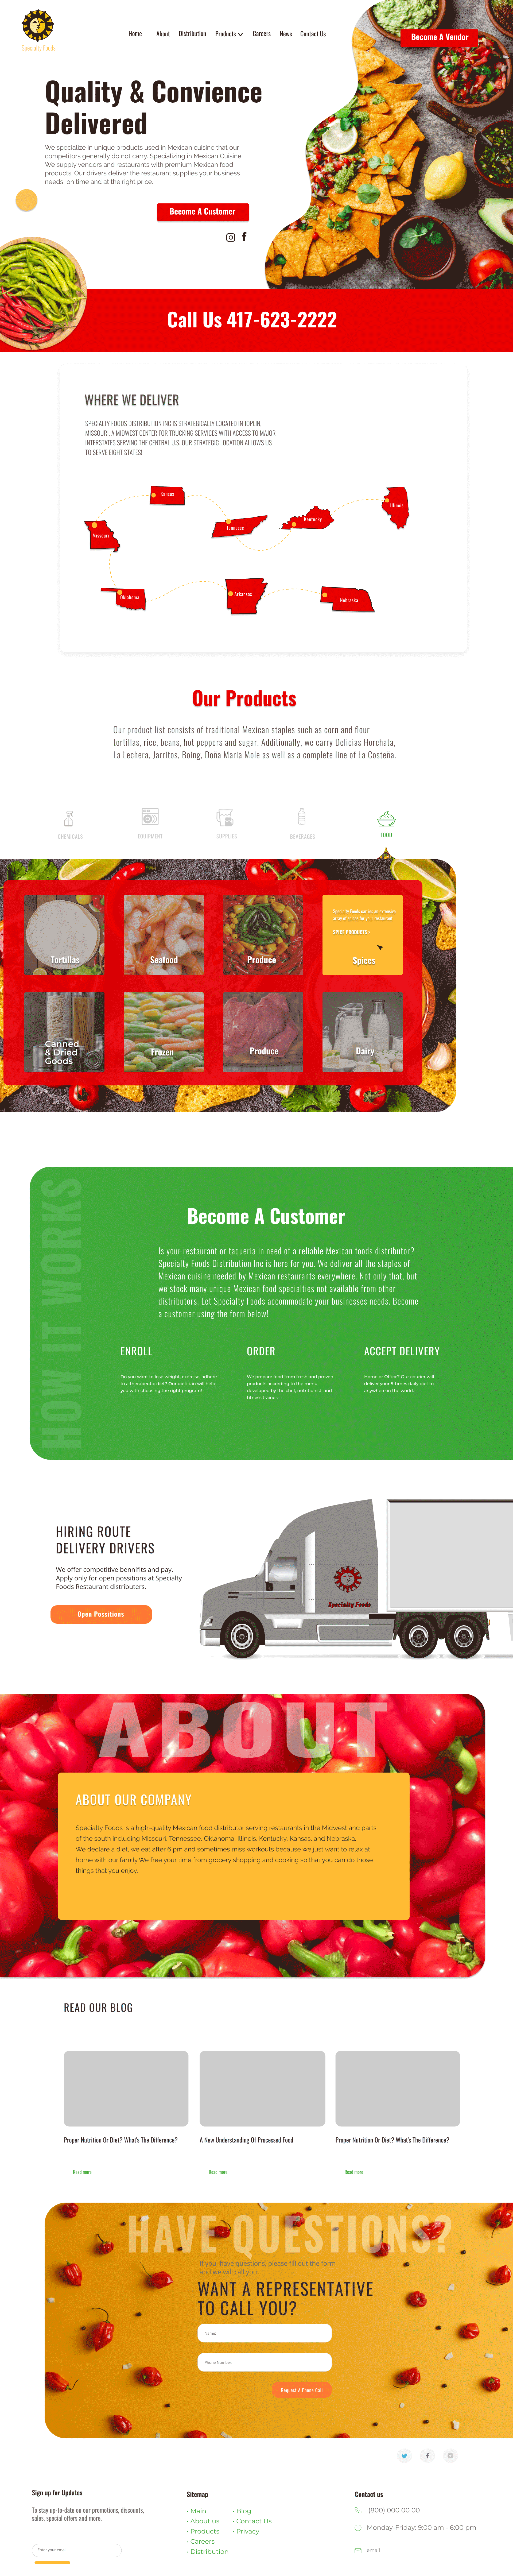 specialty-foods-website